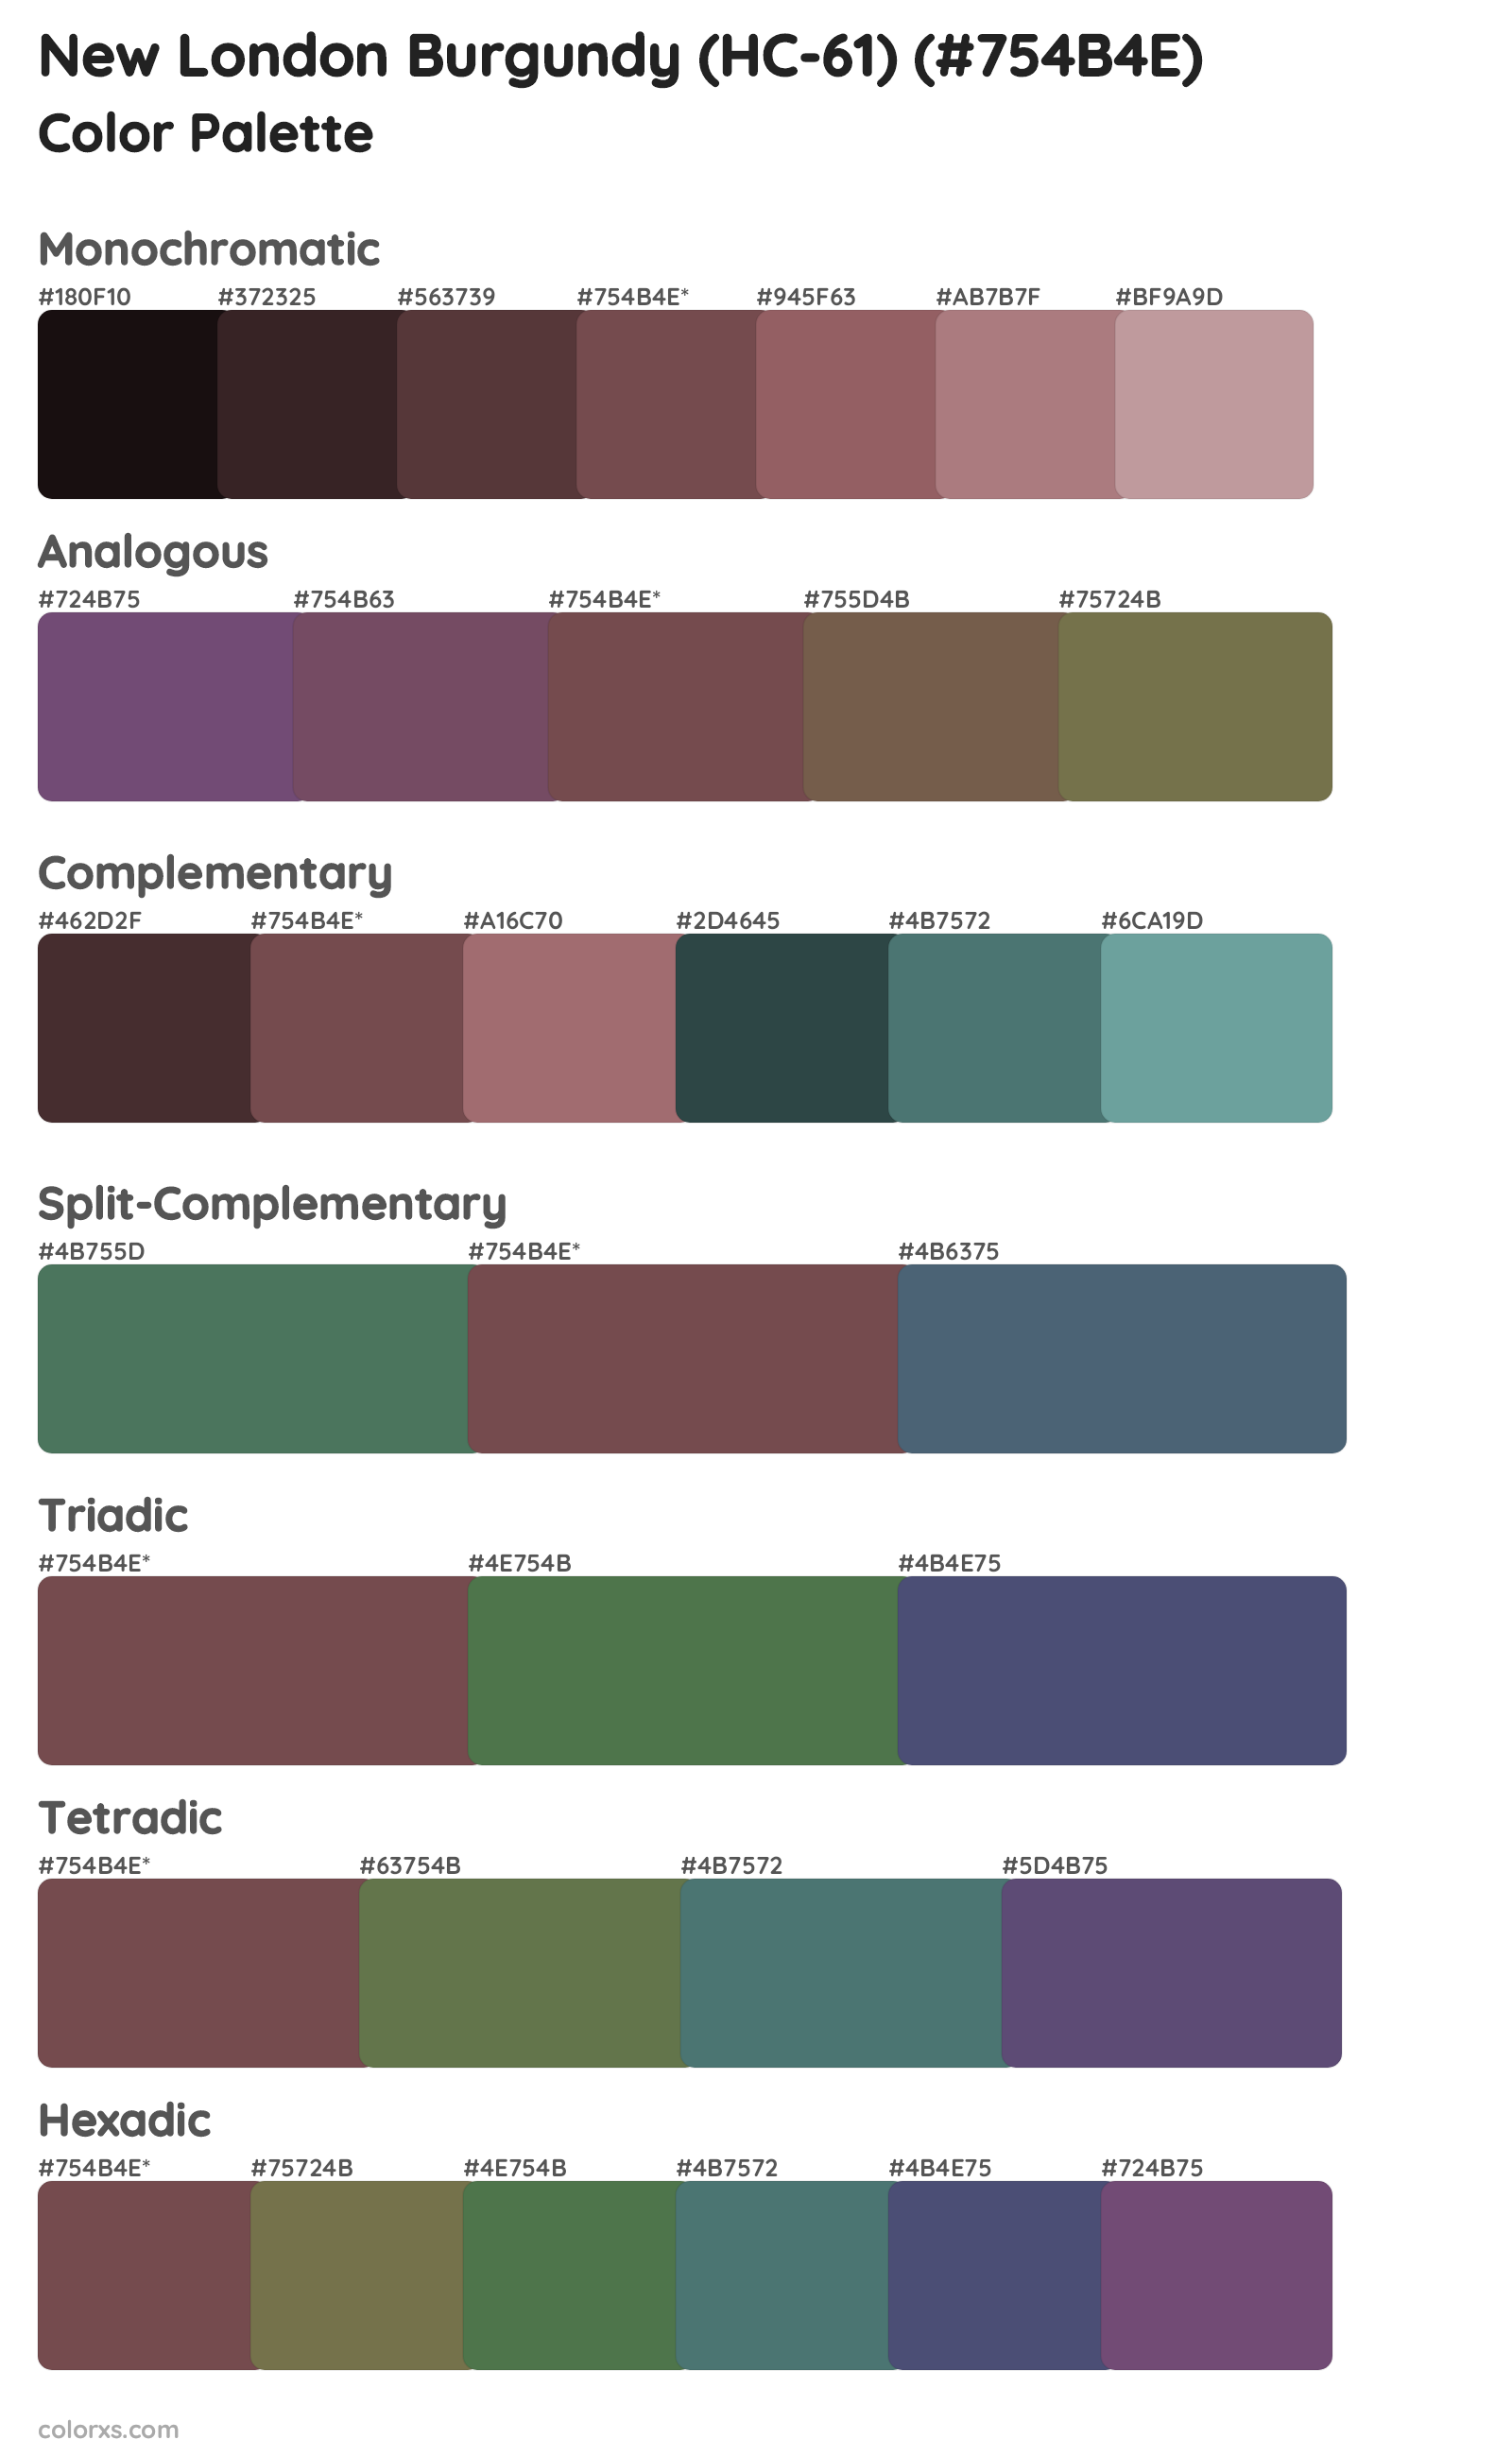 New London Burgundy (HC-61) Color Scheme Palettes